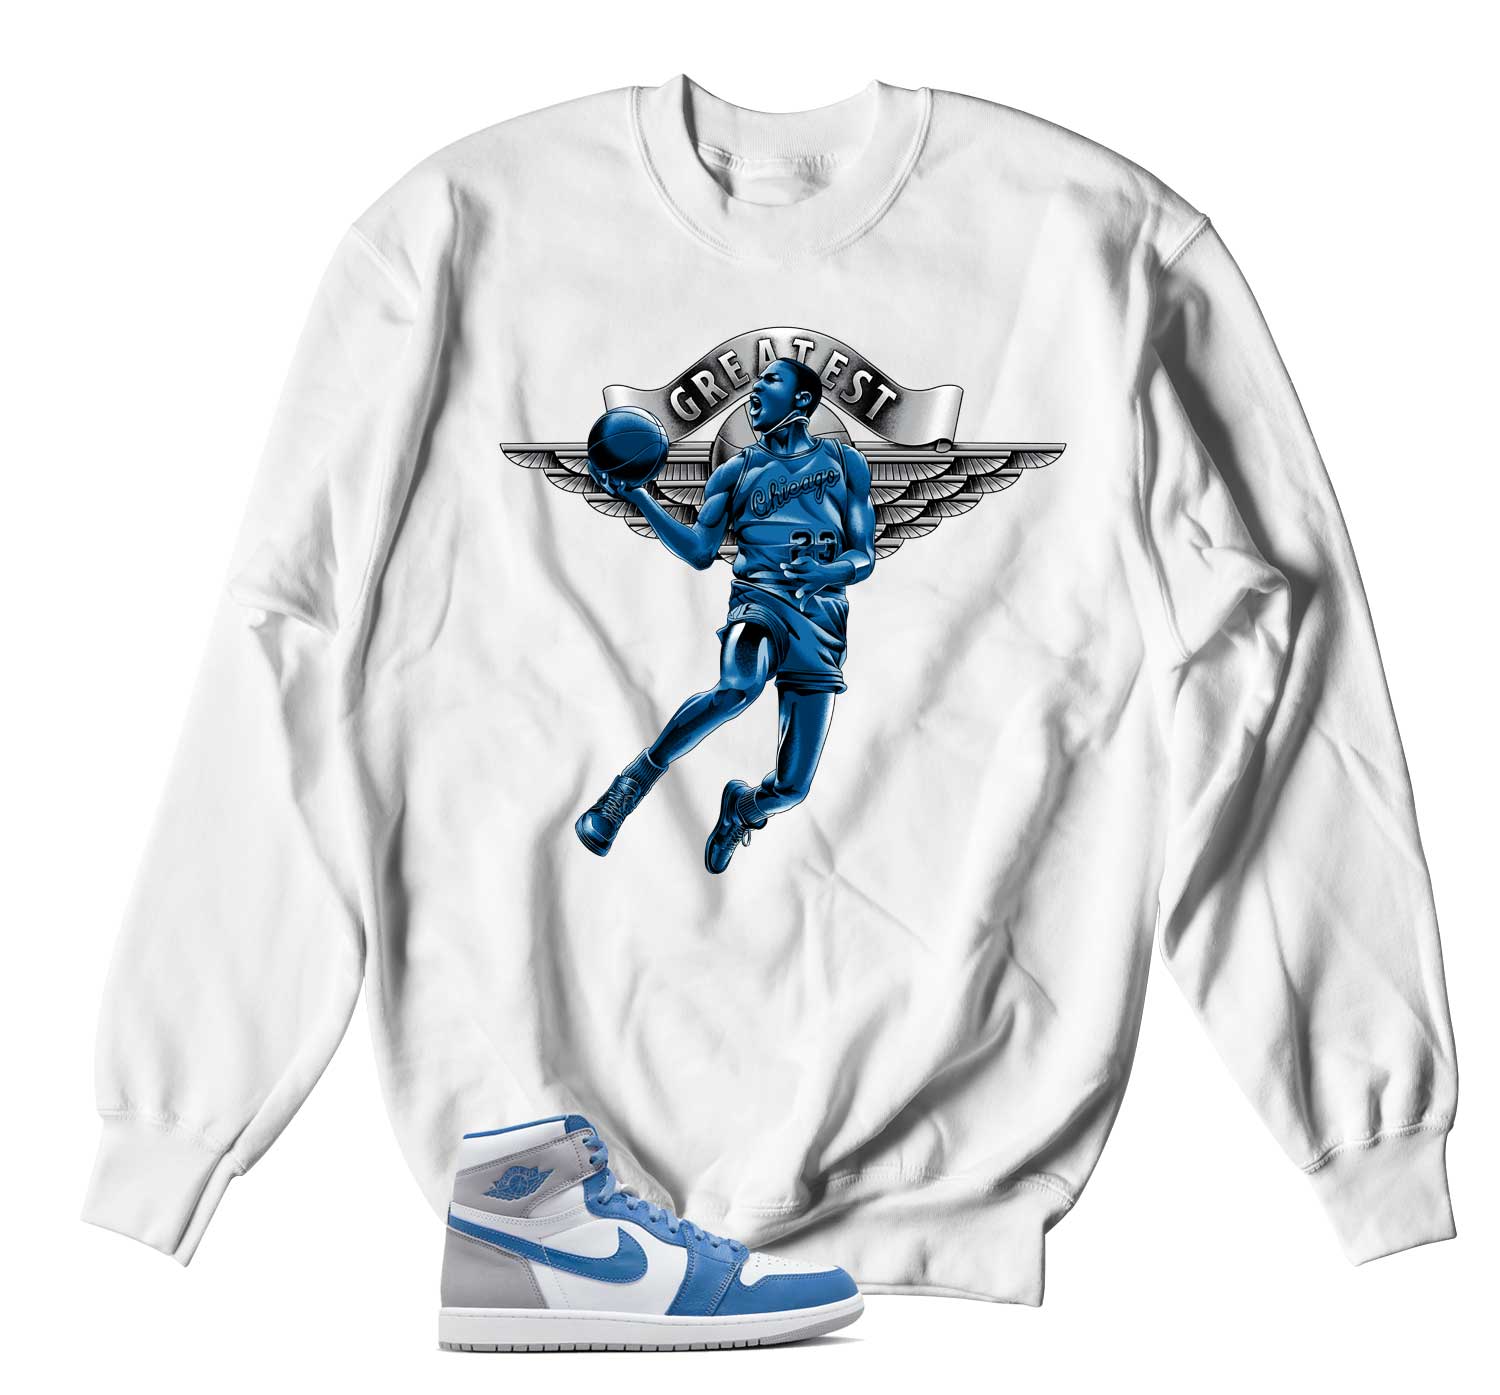 Retro 1 True Blue Sweater - Greatest - White